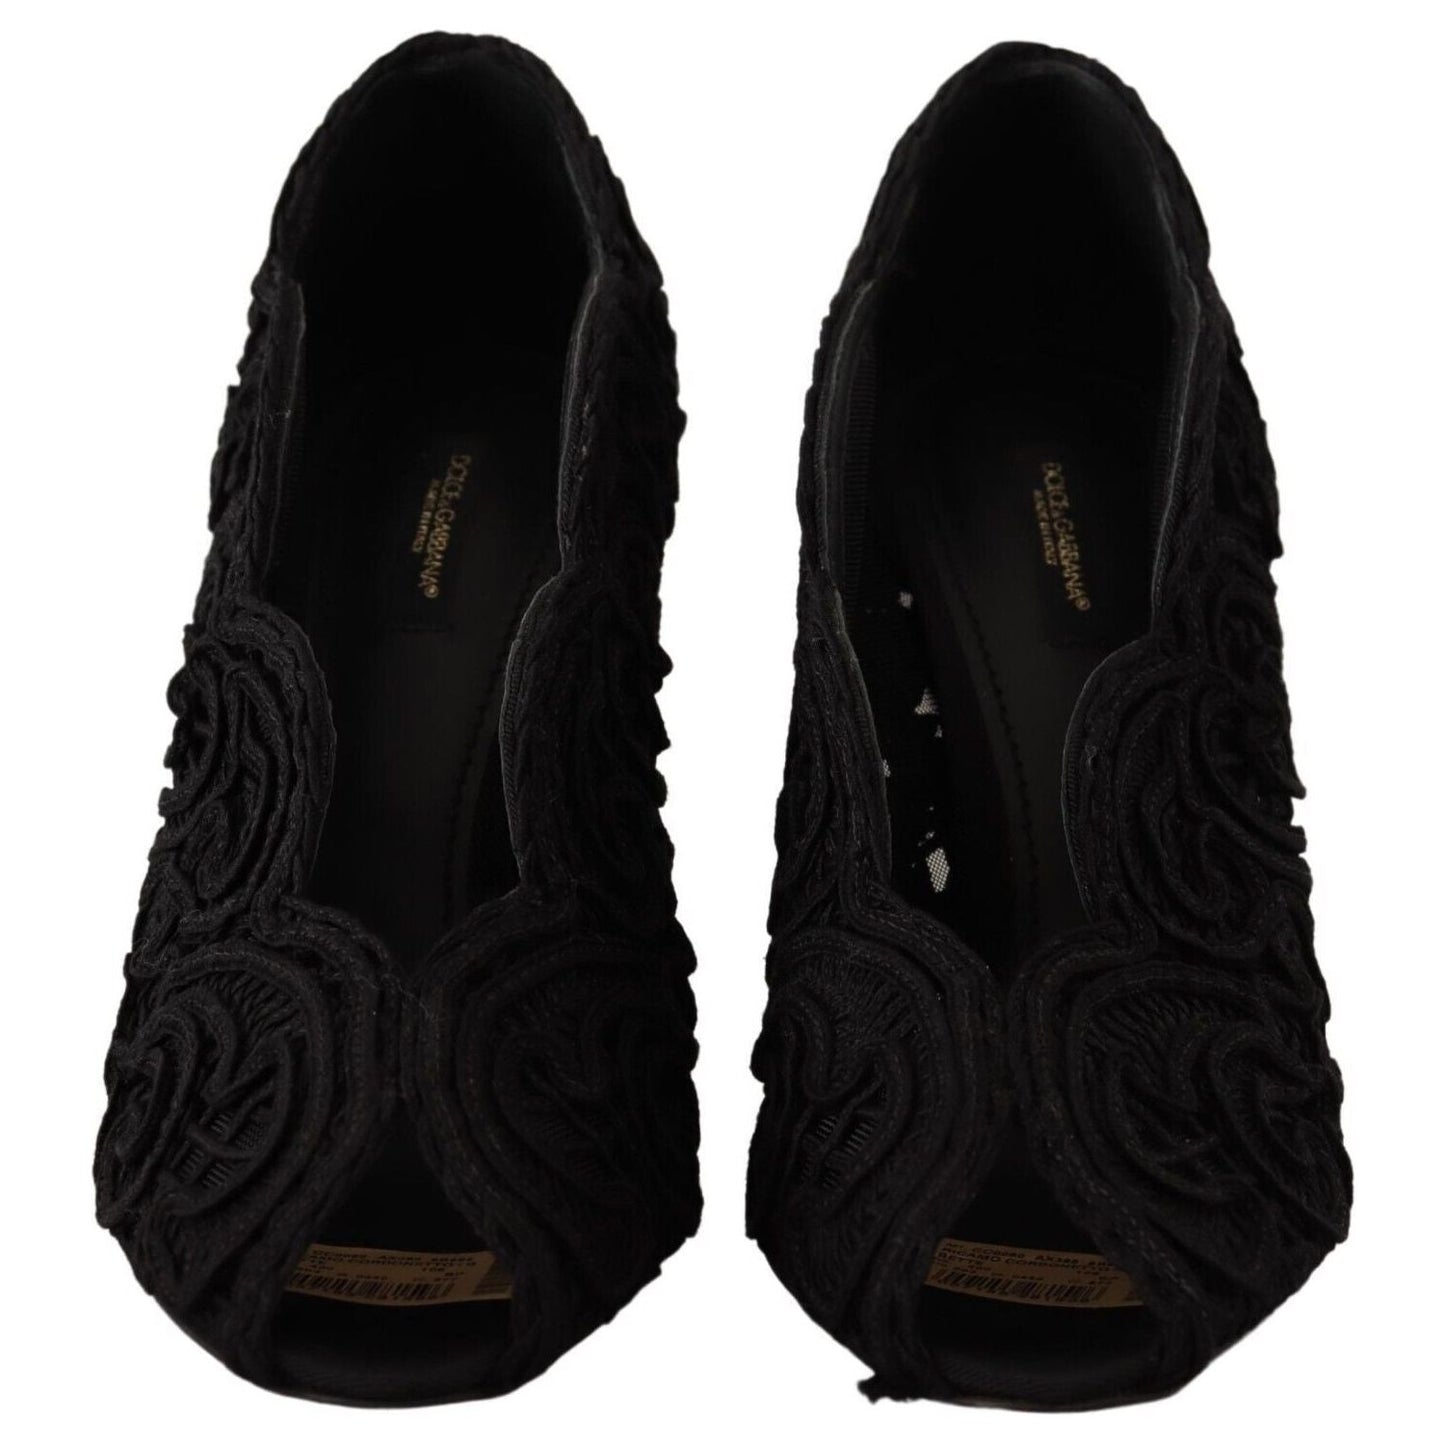 Dolce & Gabbana Elegant Black Lace Stiletto Heels black-cordonetto-ricamo-pump-open-toe-shoes s-l1600-2-137-4f0decde-ad8.jpg